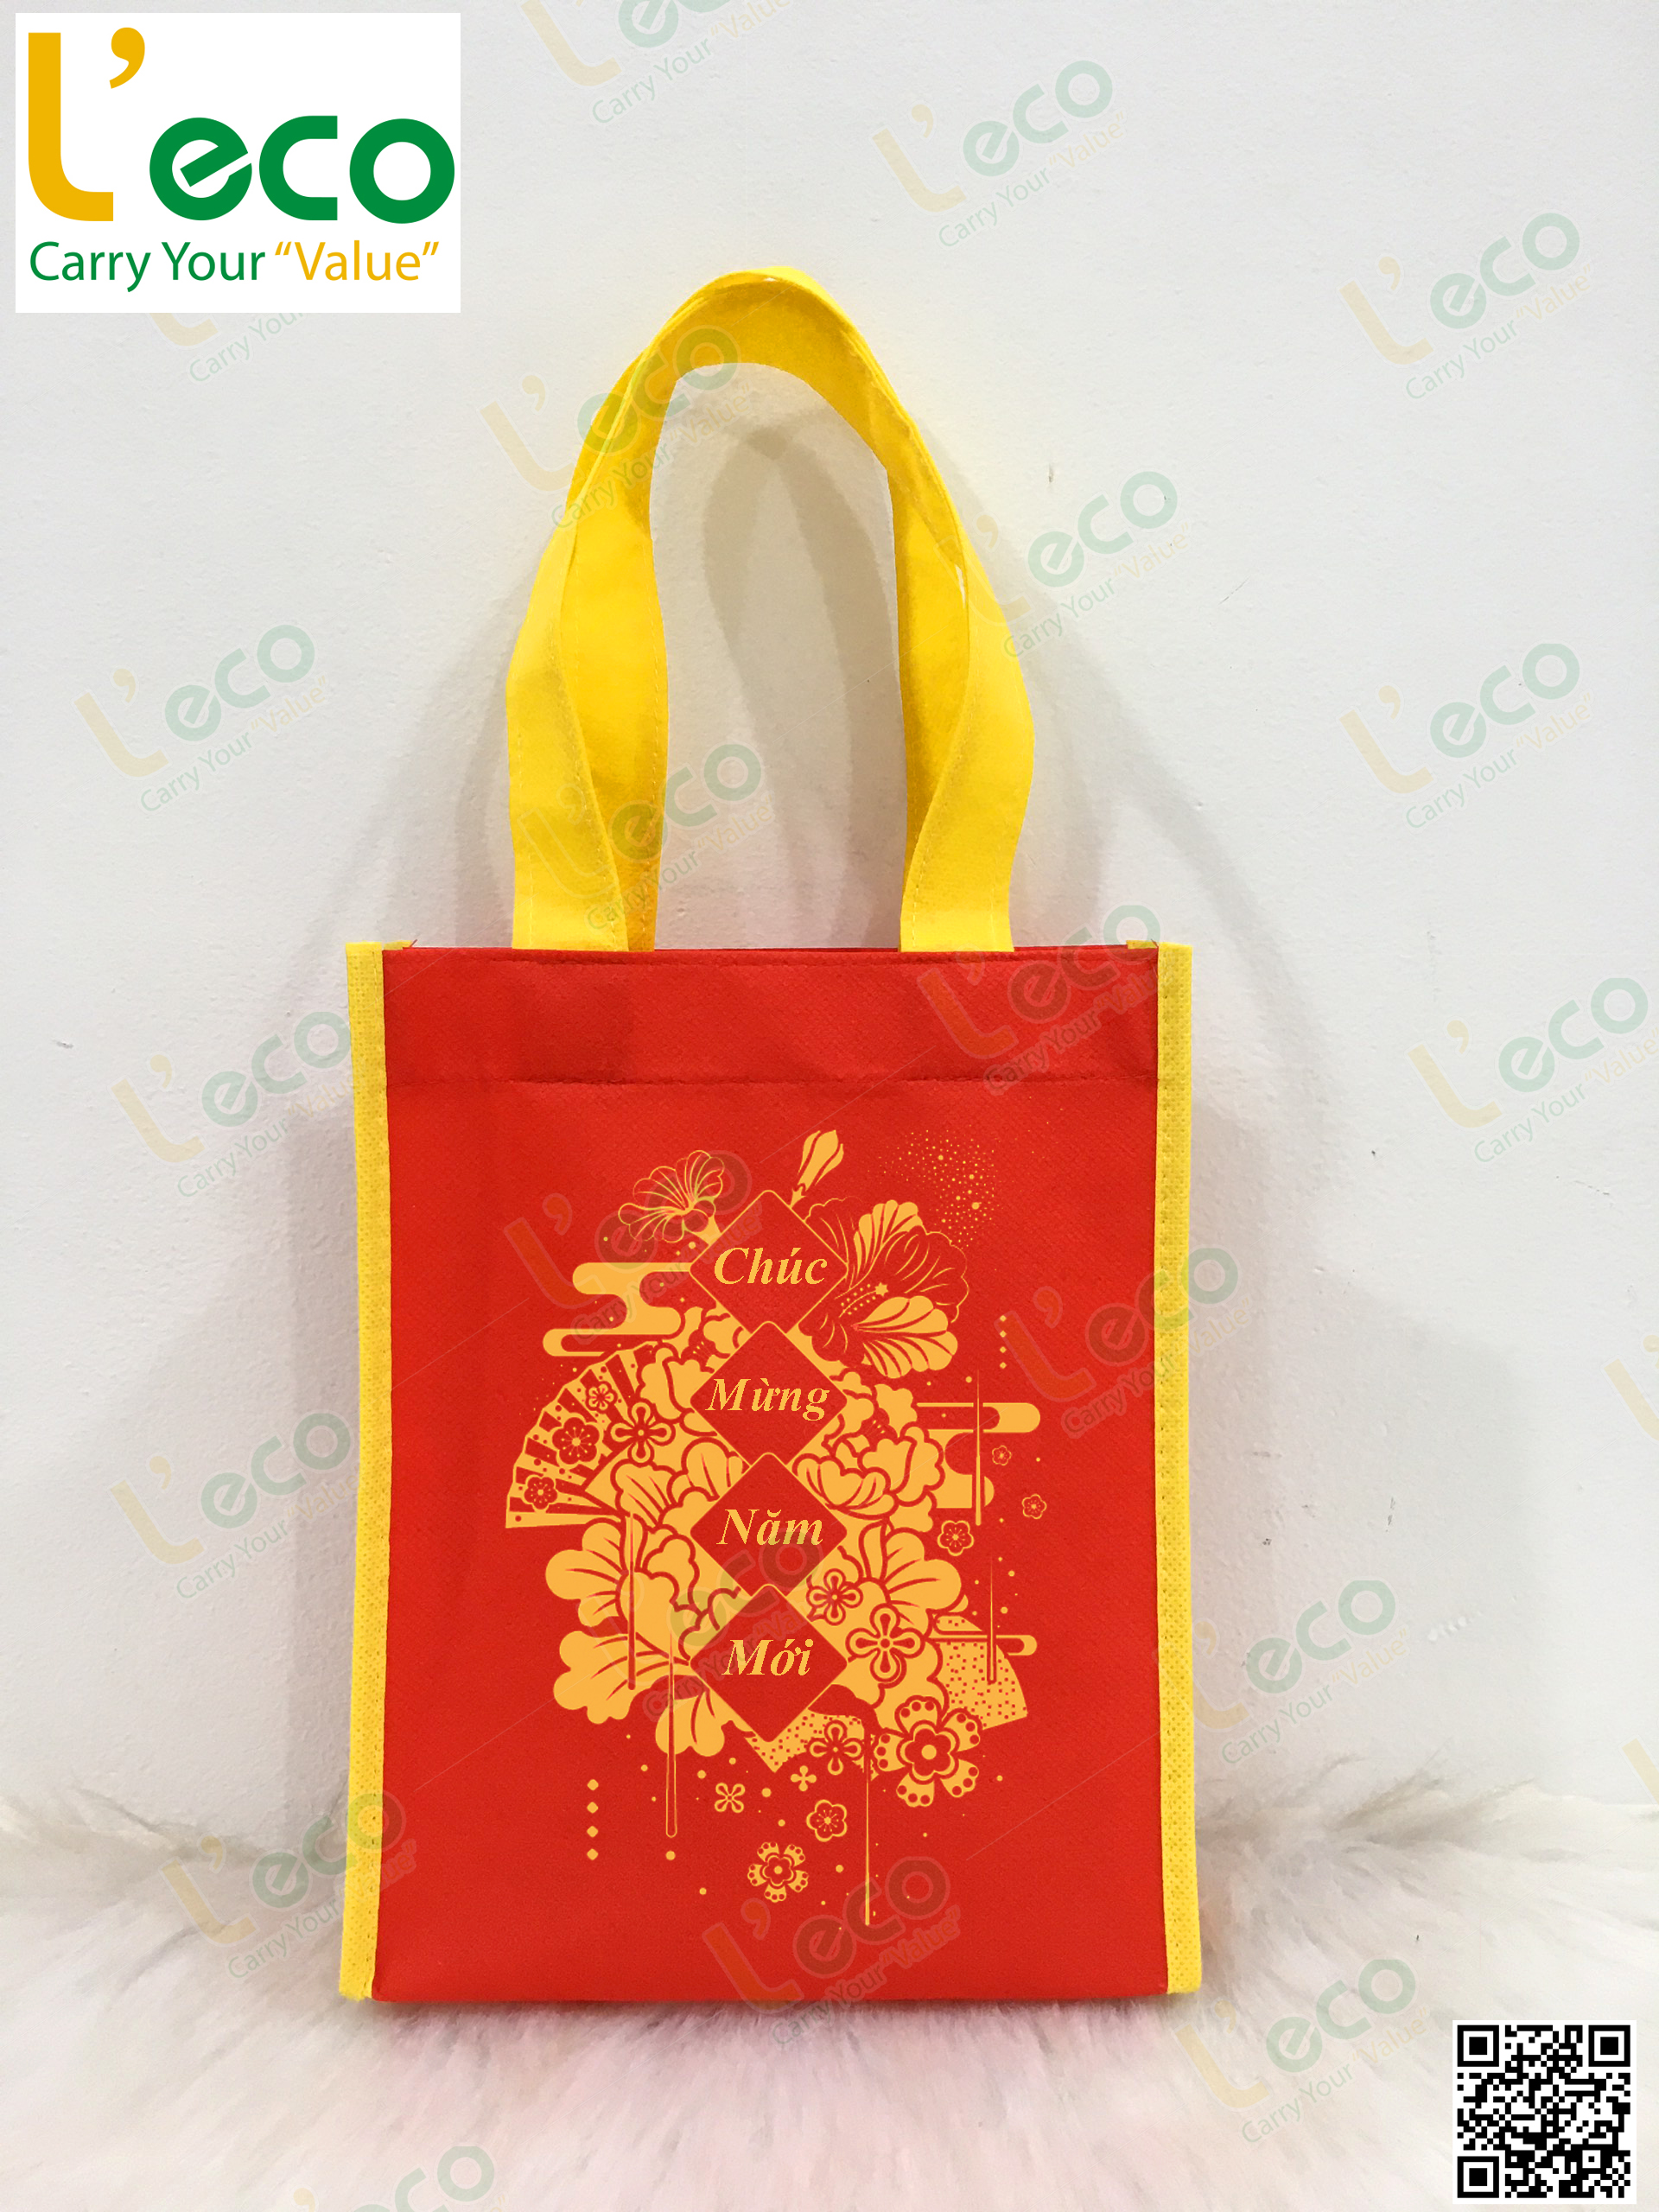 Tet gift bag with logo printed